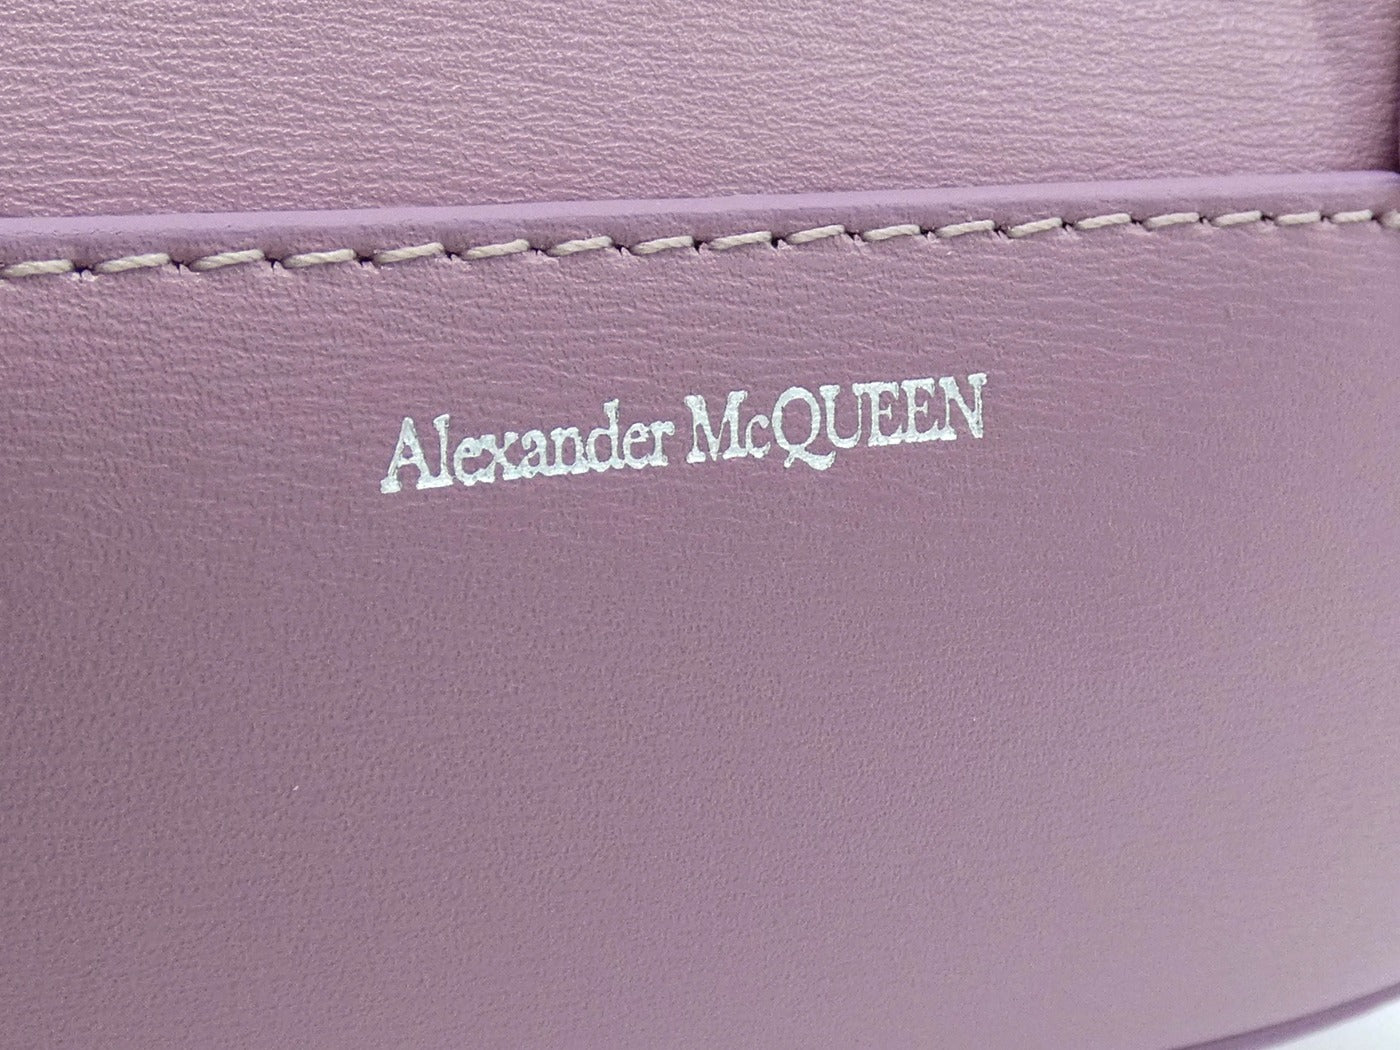 Alexander McQueen The Jewelled Hobo Mini Bag in Antique Pink Bag Alexander McQueen